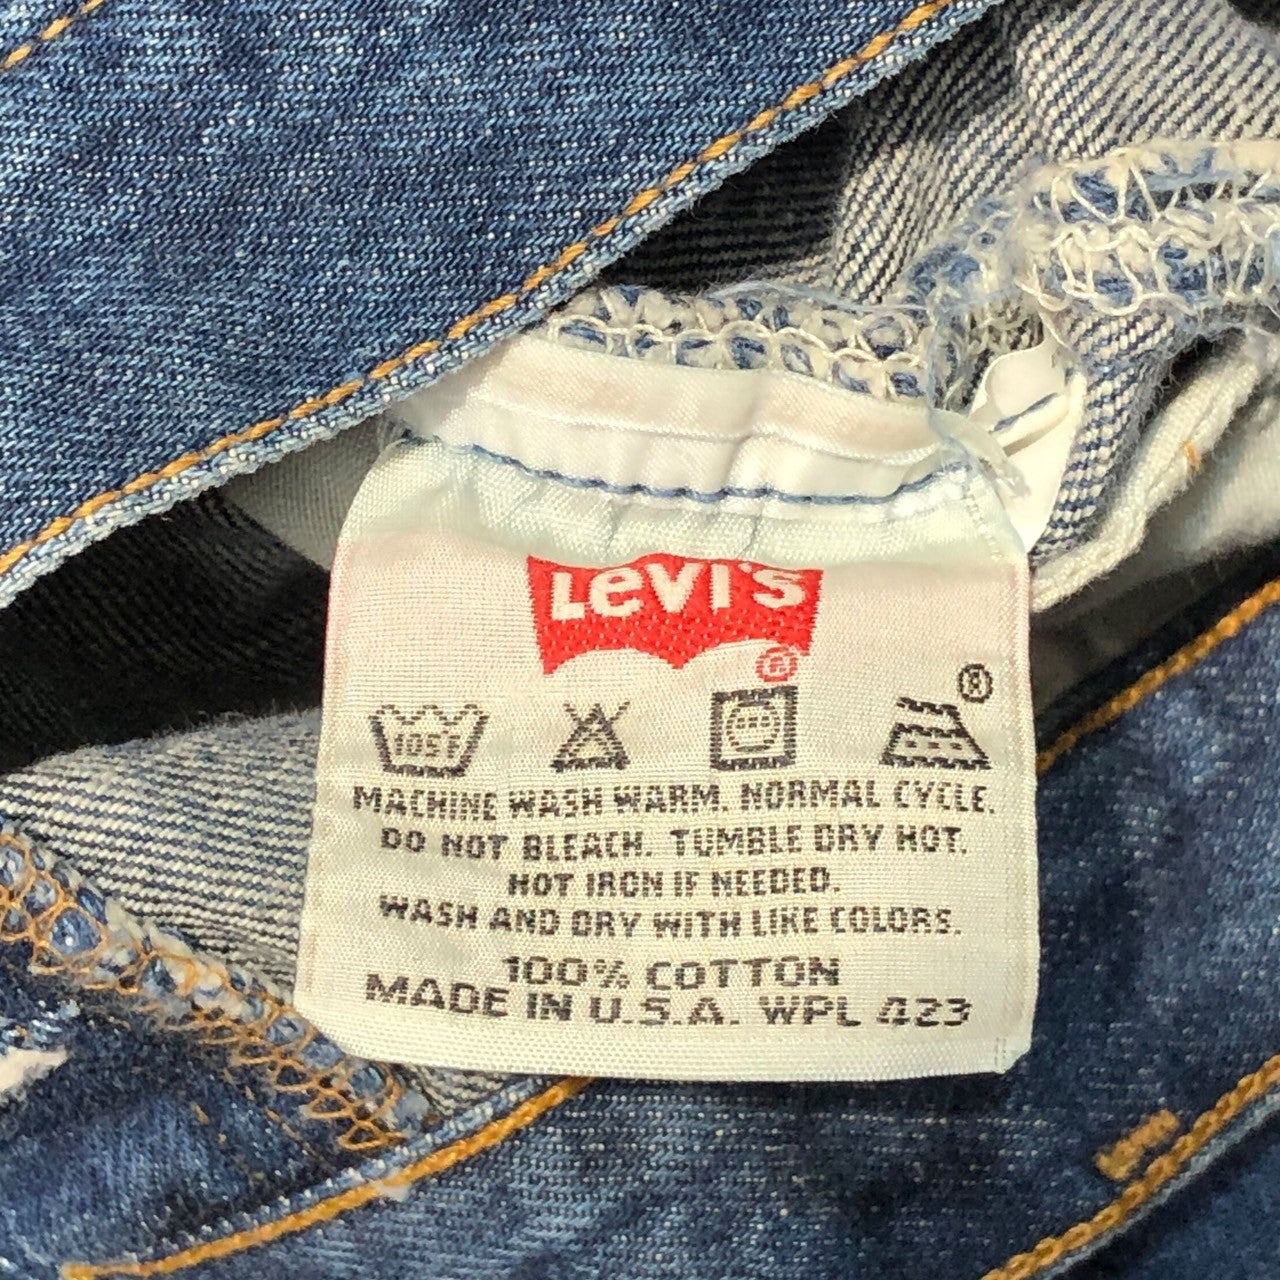 Levi's(リーバイス) 90's 501 straight denim pants ストレート デニム パンツ 501-0169 W38/L34 インディゴ USA製 1999年製造 90年代 ヴィンテージ